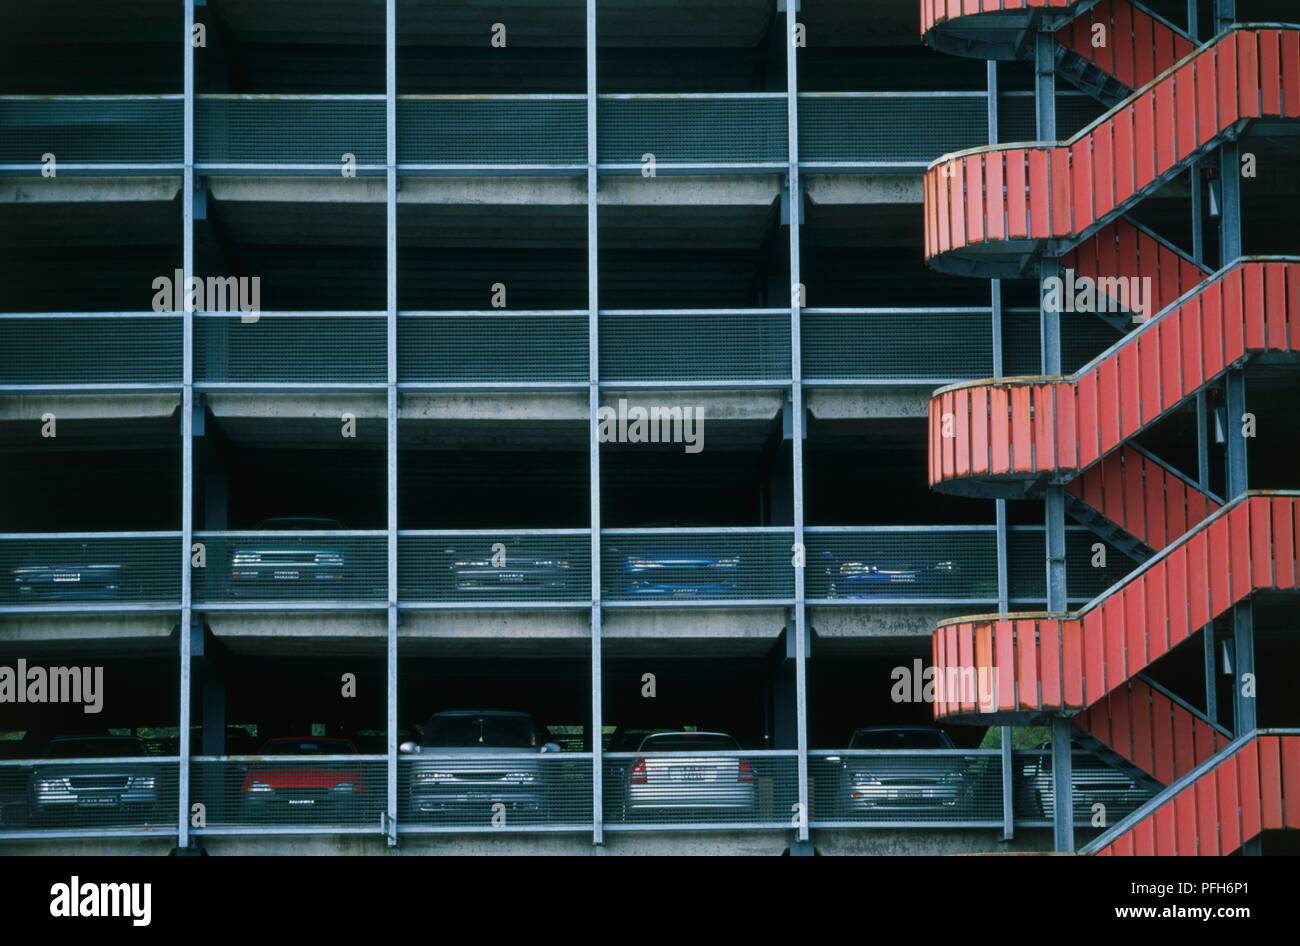 La Suisse, Genève, extérieur de parking à étages avec escalier rouge Banque D'Images